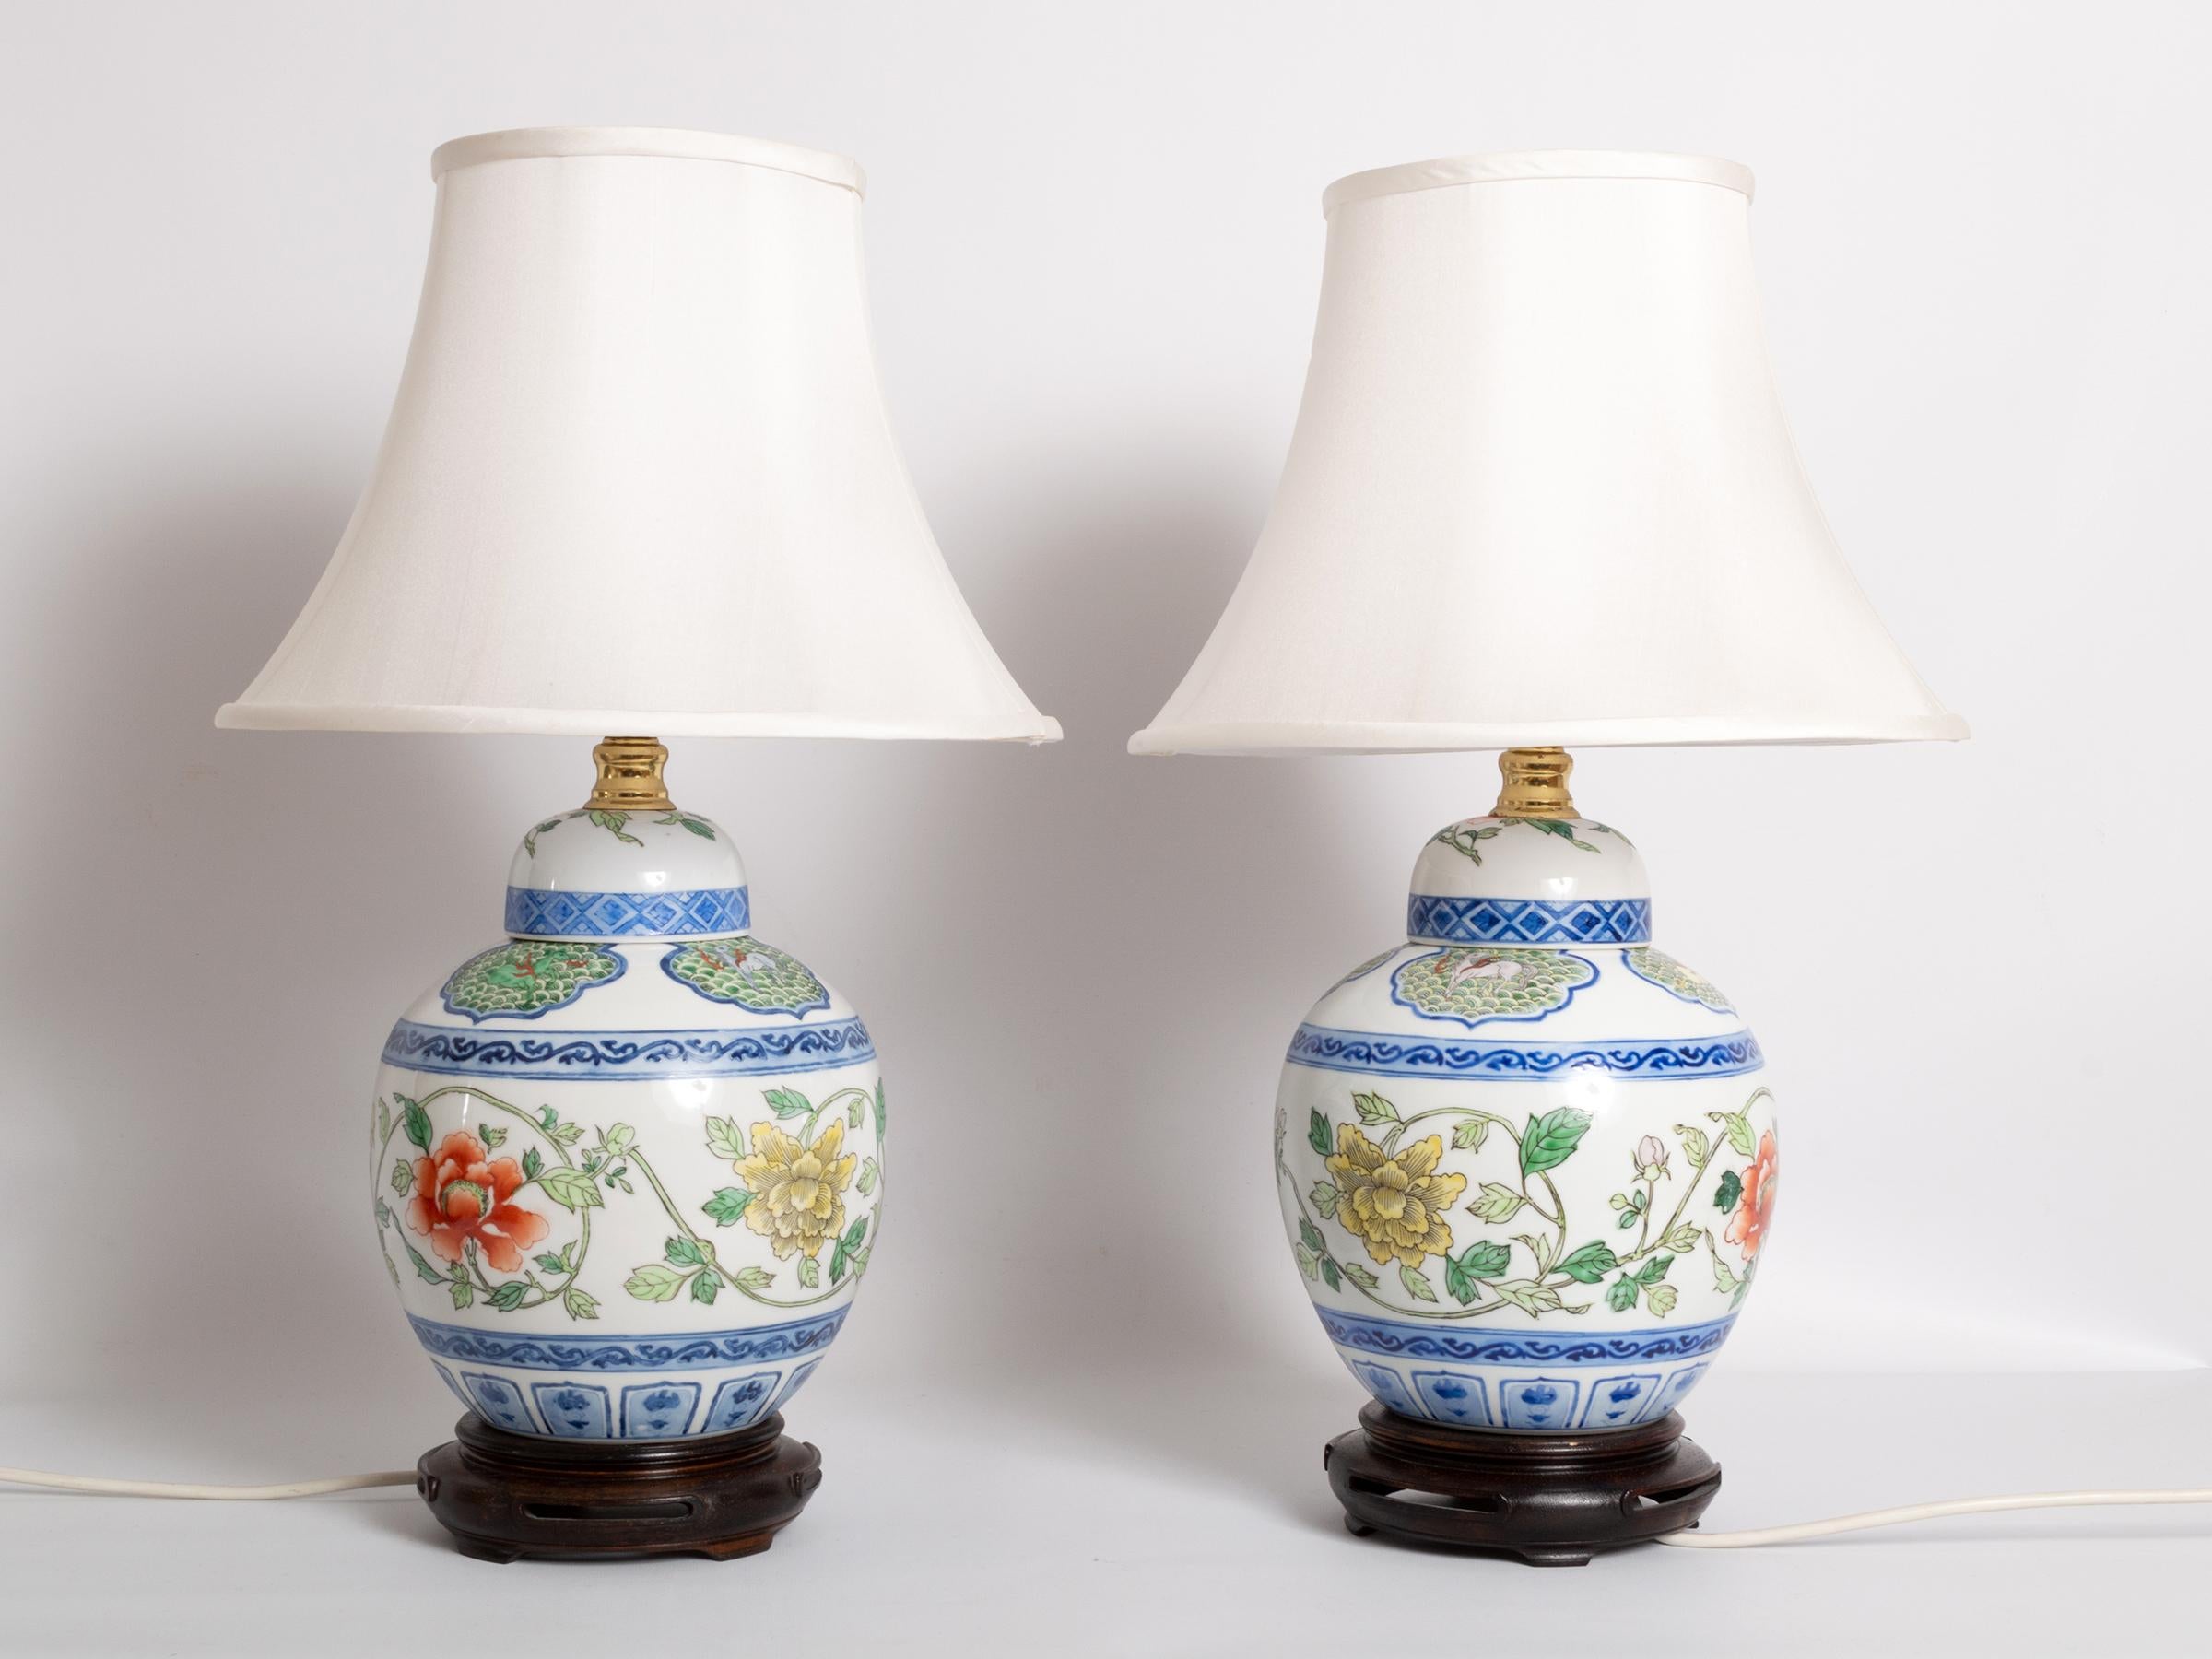 Paire de lampes de table Maitland Smith en porcelaine chinoise peinte à la main, Hong Kong, vers 1970.
Les lampes sont accompagnées de leurs abat-jour en soie d'origine.
Vintage, en excellent état.
  